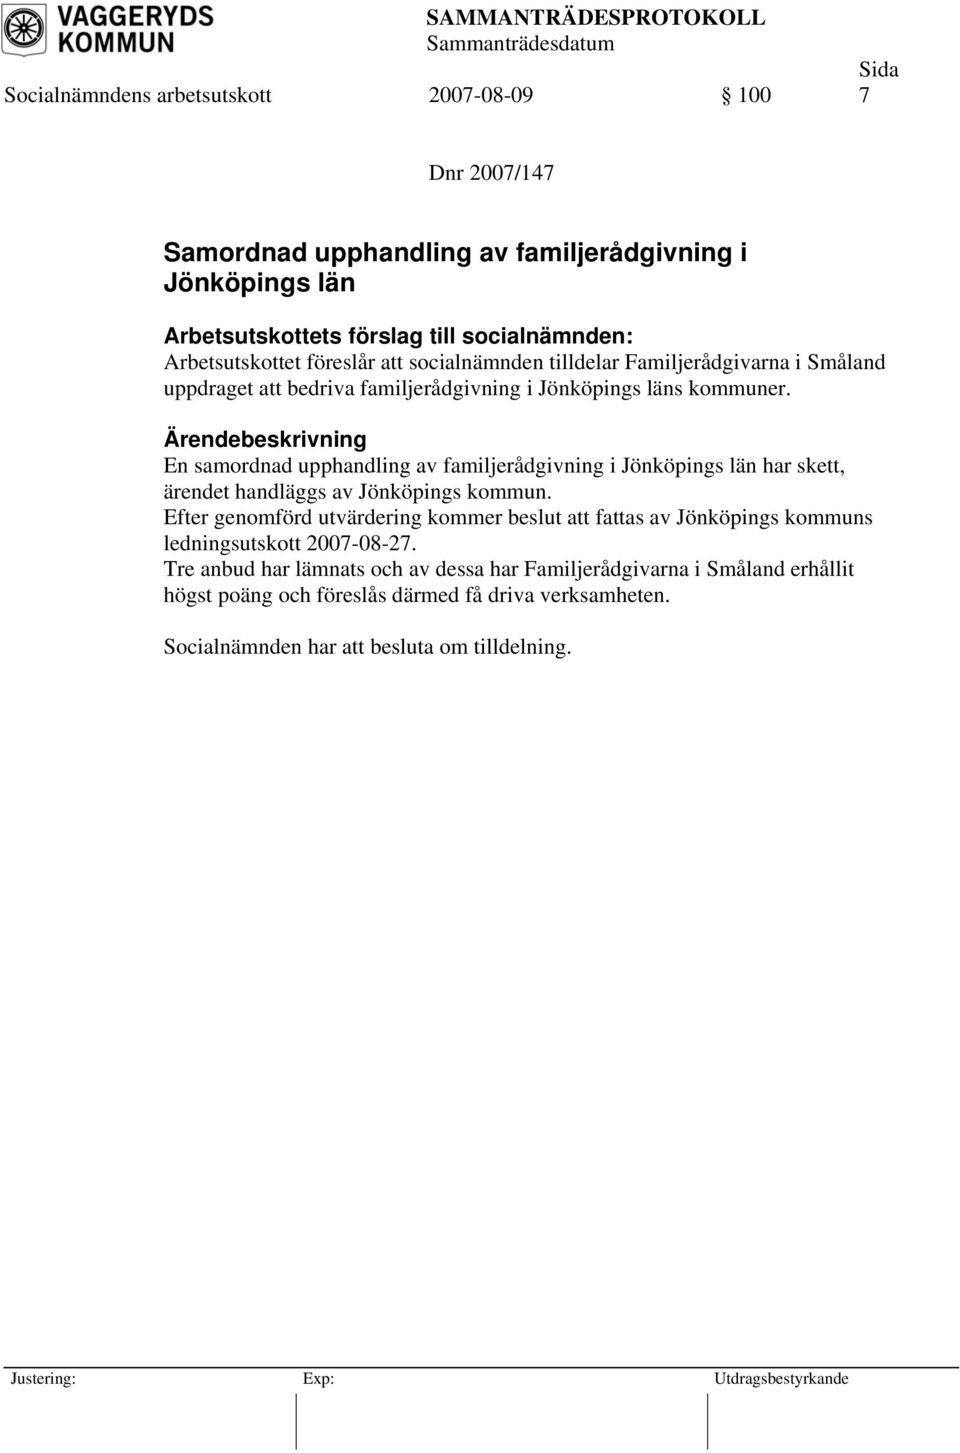 En samordnad upphandling av familjerådgivning i Jönköpings län har skett, ärendet handläggs av Jönköpings kommun.